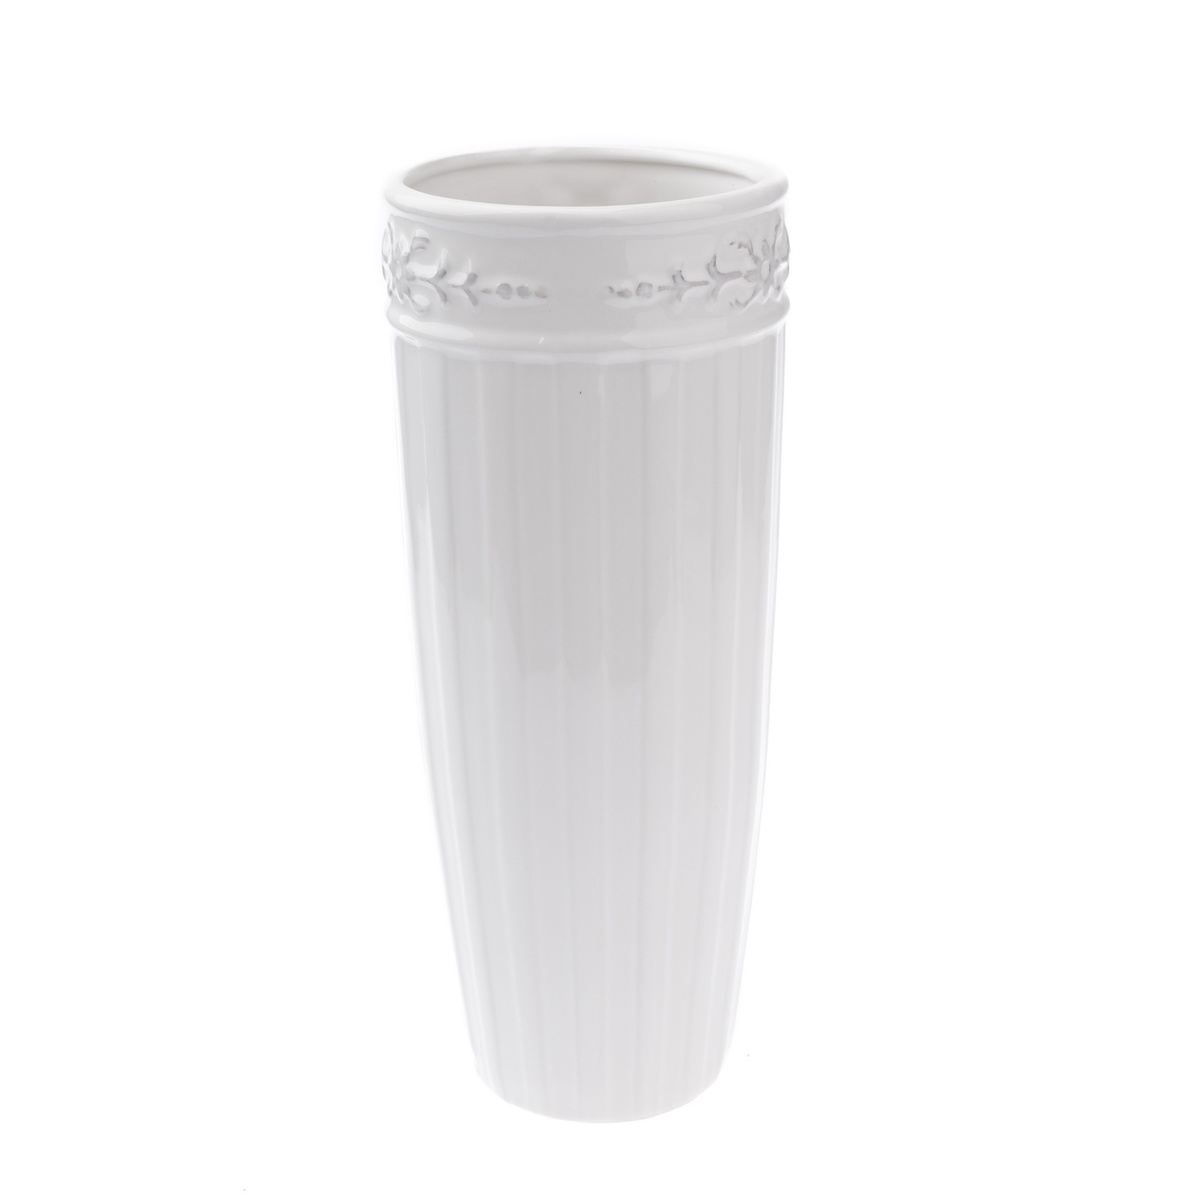 Keramická váza Will bílá, 11 x 24 cm